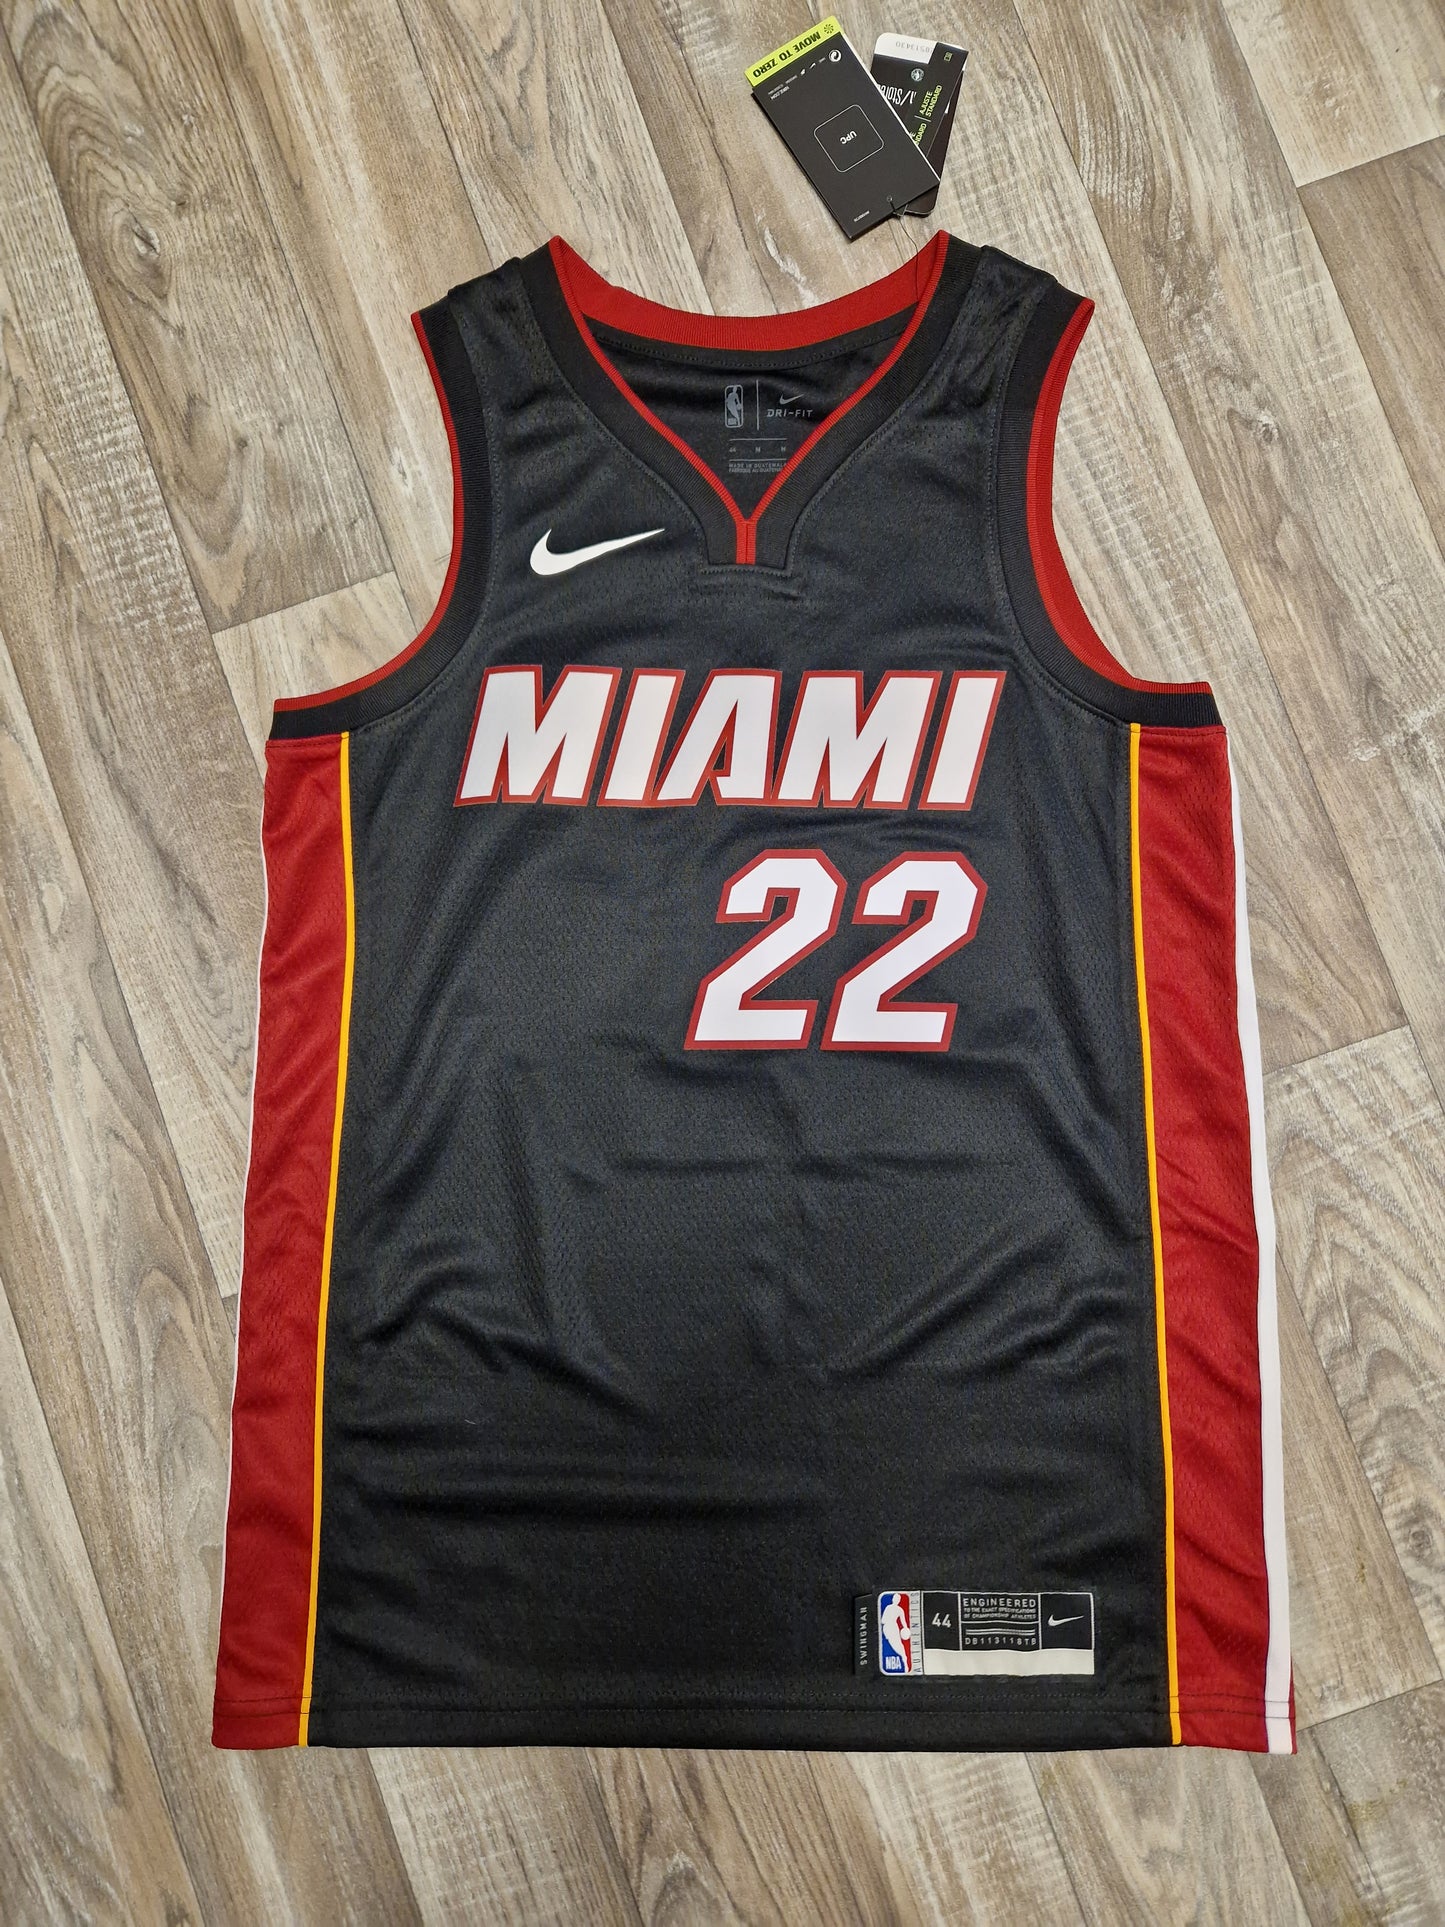 Jimmy Butler Miami Heat Jersey Size Medium